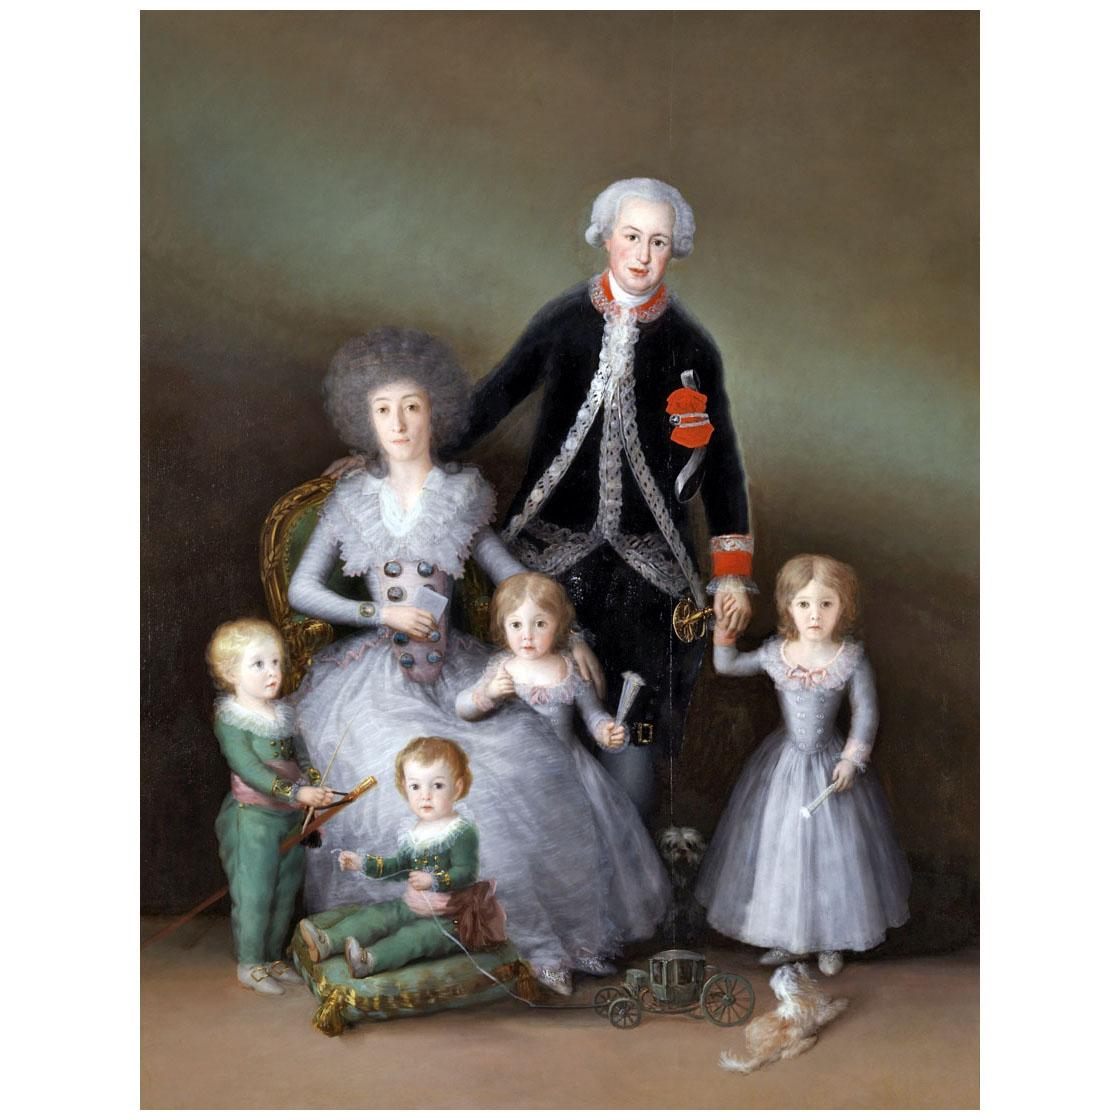 Francisco de Goya. Los duques de Osuna y sus hijos. 1788. Museo del Prado Madrid